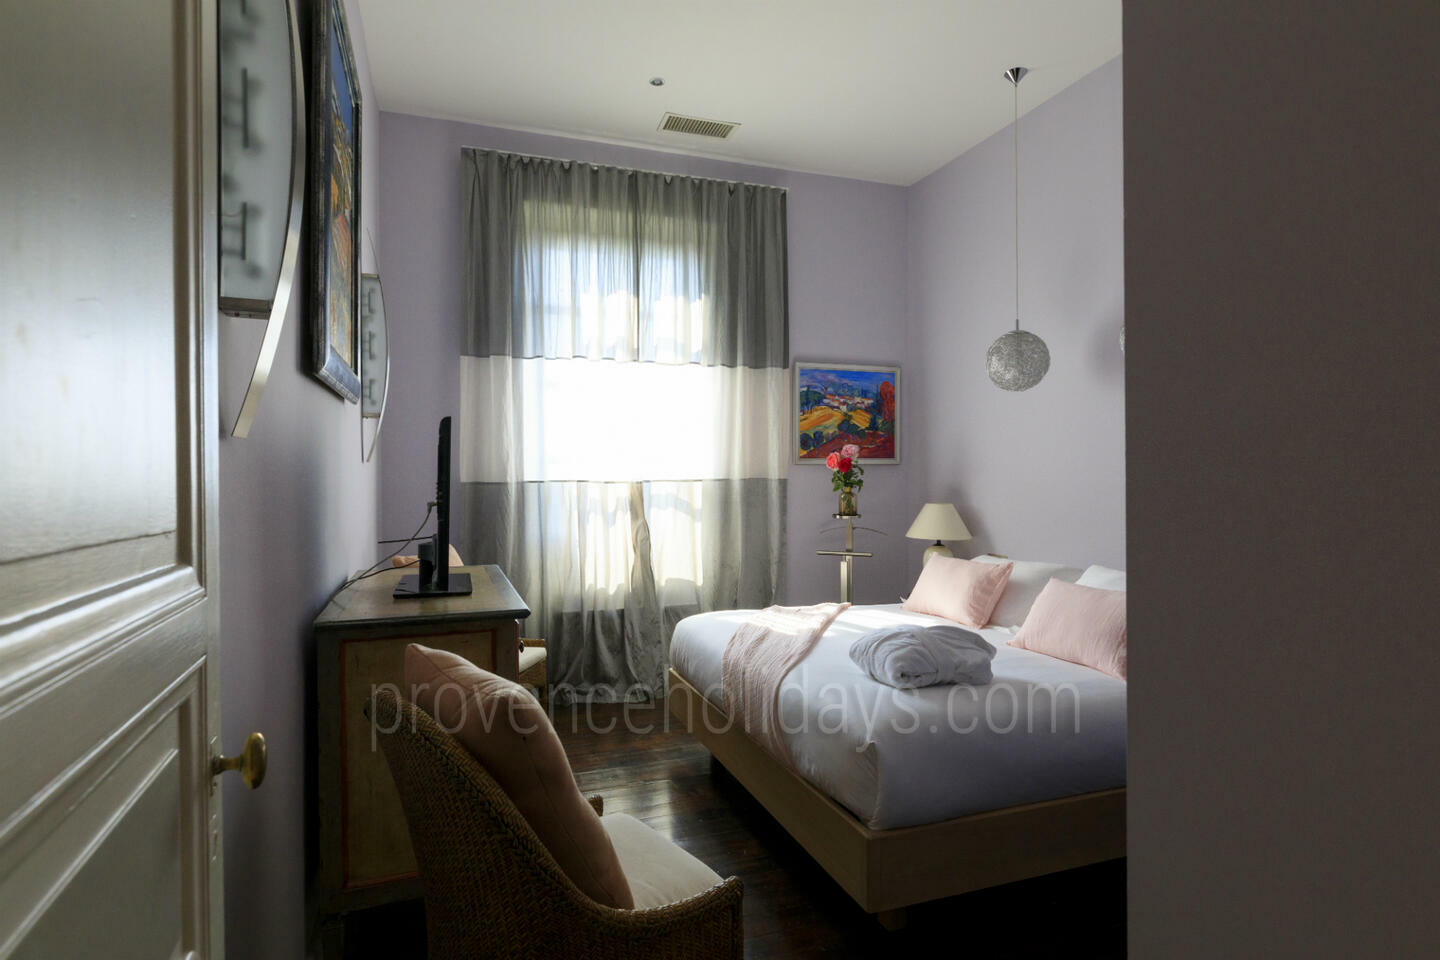 43 - Domaine Bernard: Villa: Bedroom